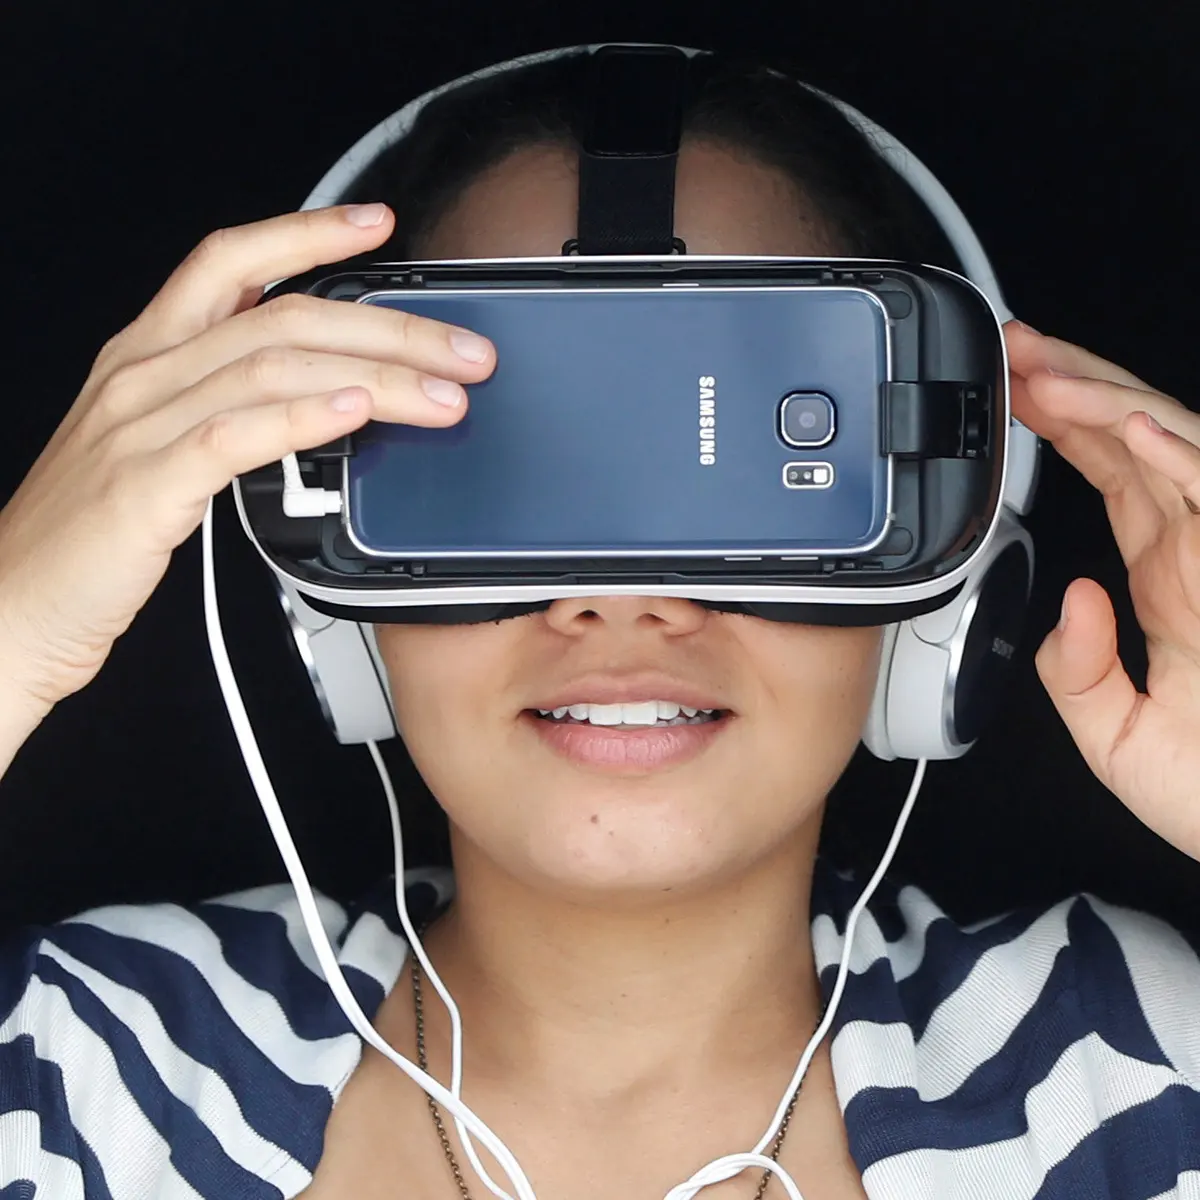 图片展示一位女士正在佩戴虚拟现实头盔和耳机，她似乎正体验VR技术带来的沉浸式感受。